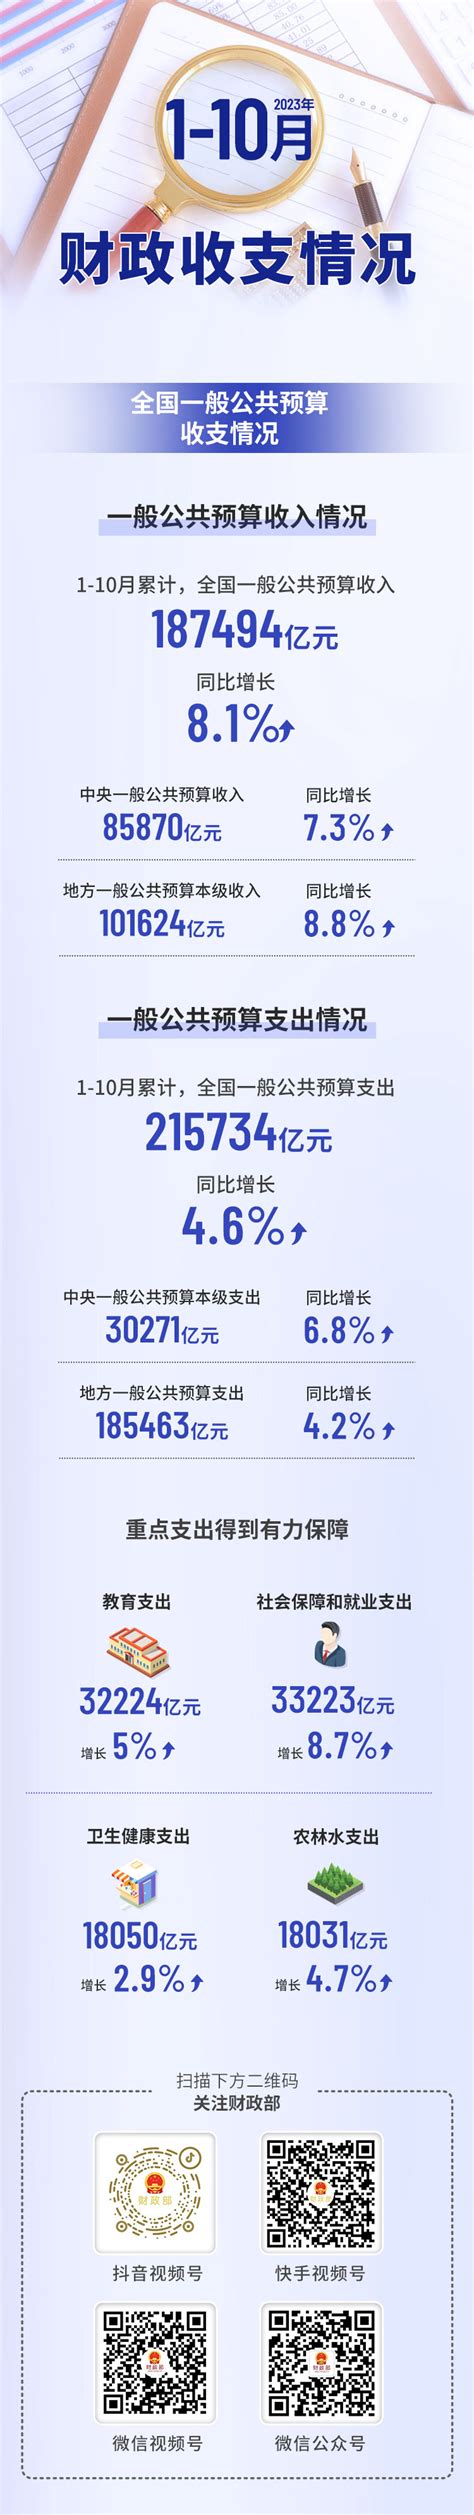 淄博市财政局 财经资讯 一图速览2023年1-10月财政收支情况